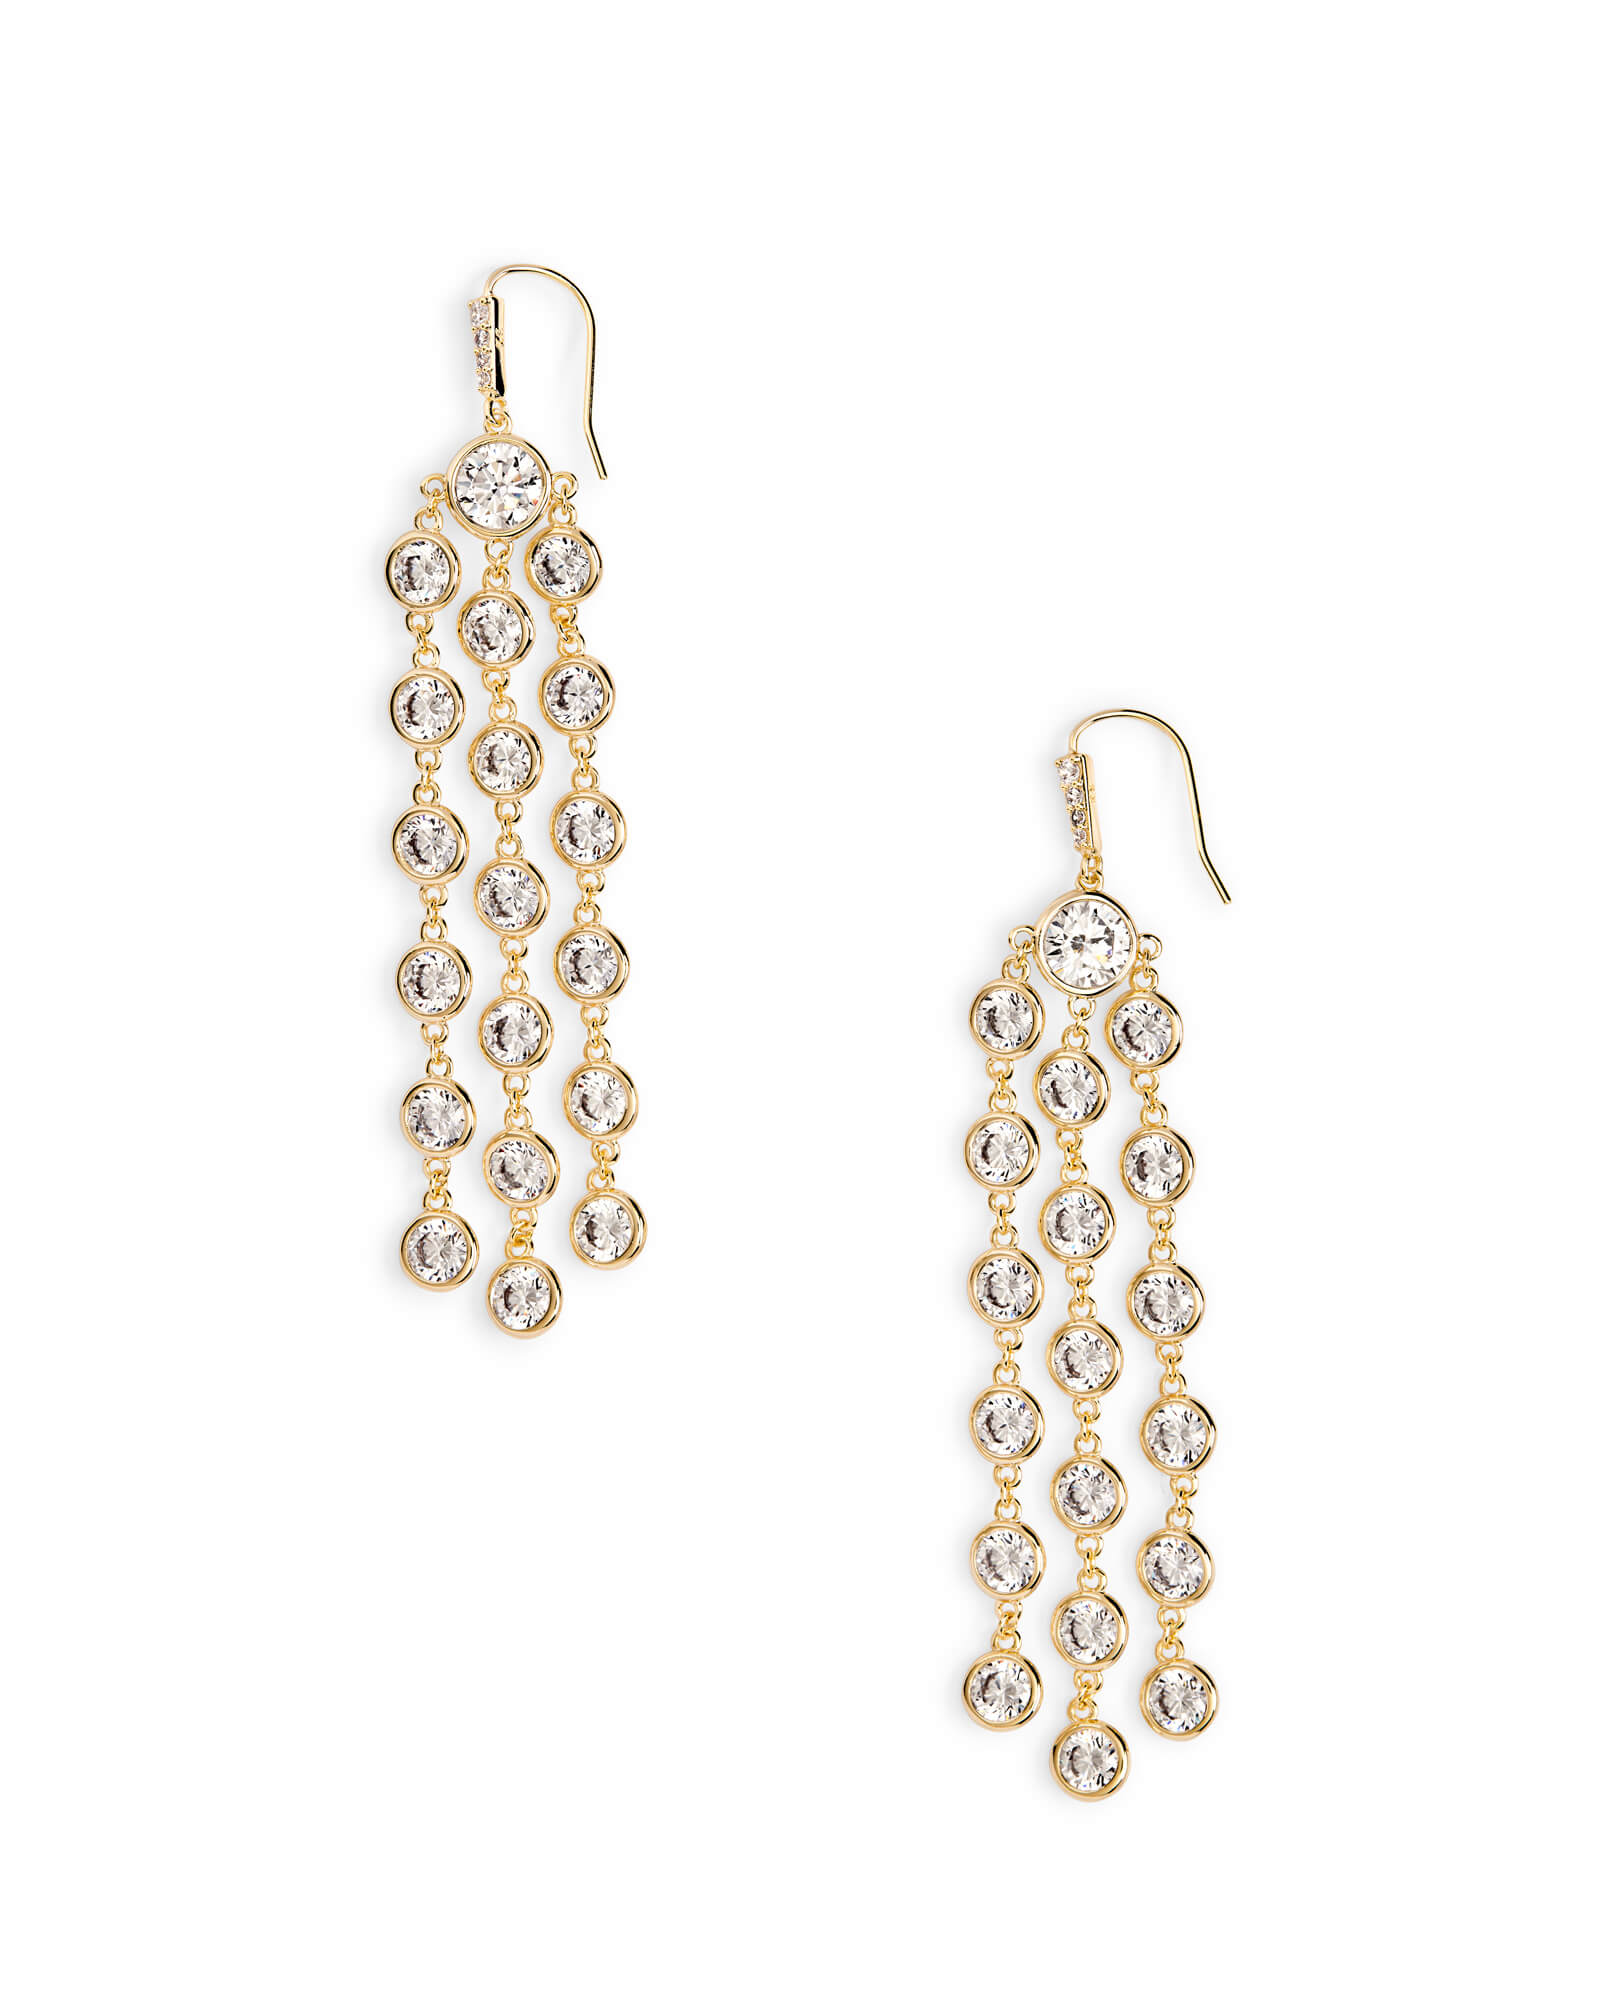 Kendra Scott Daya Statement Earrings in Gold | White Cubic Zirconia